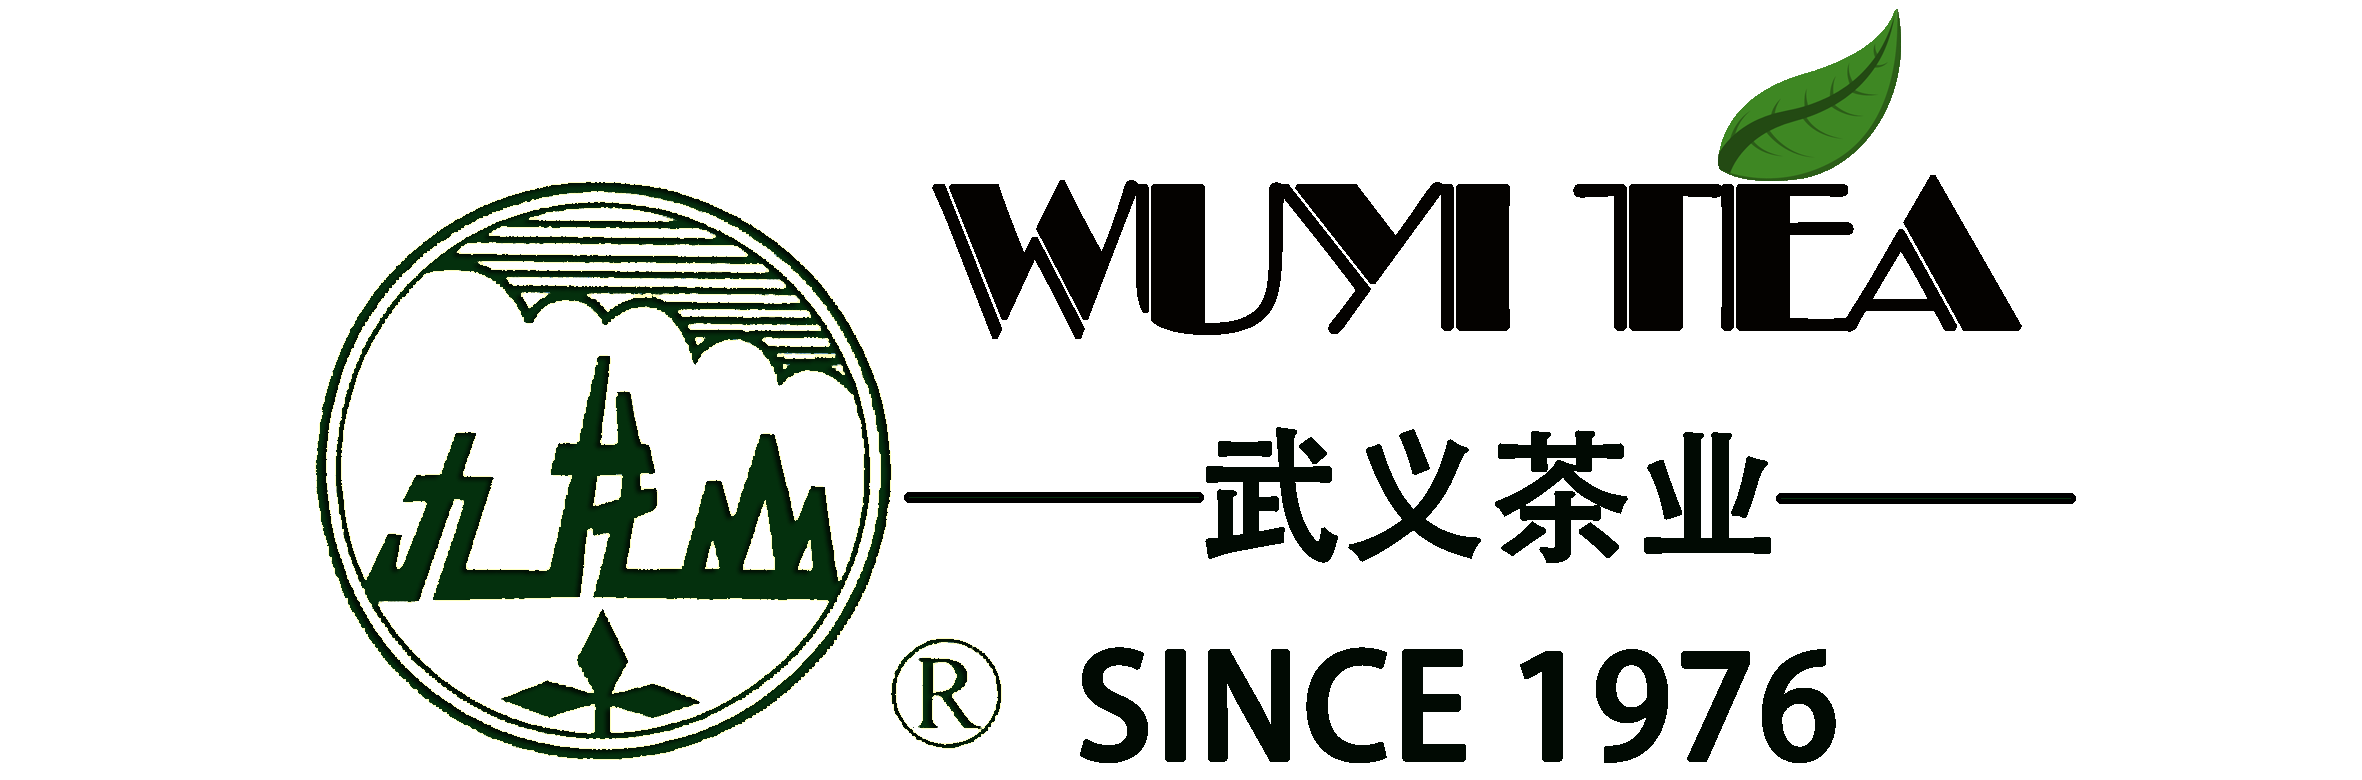 Industry News - Zhejiang Wuyi Tea Industry Co., Ltd.